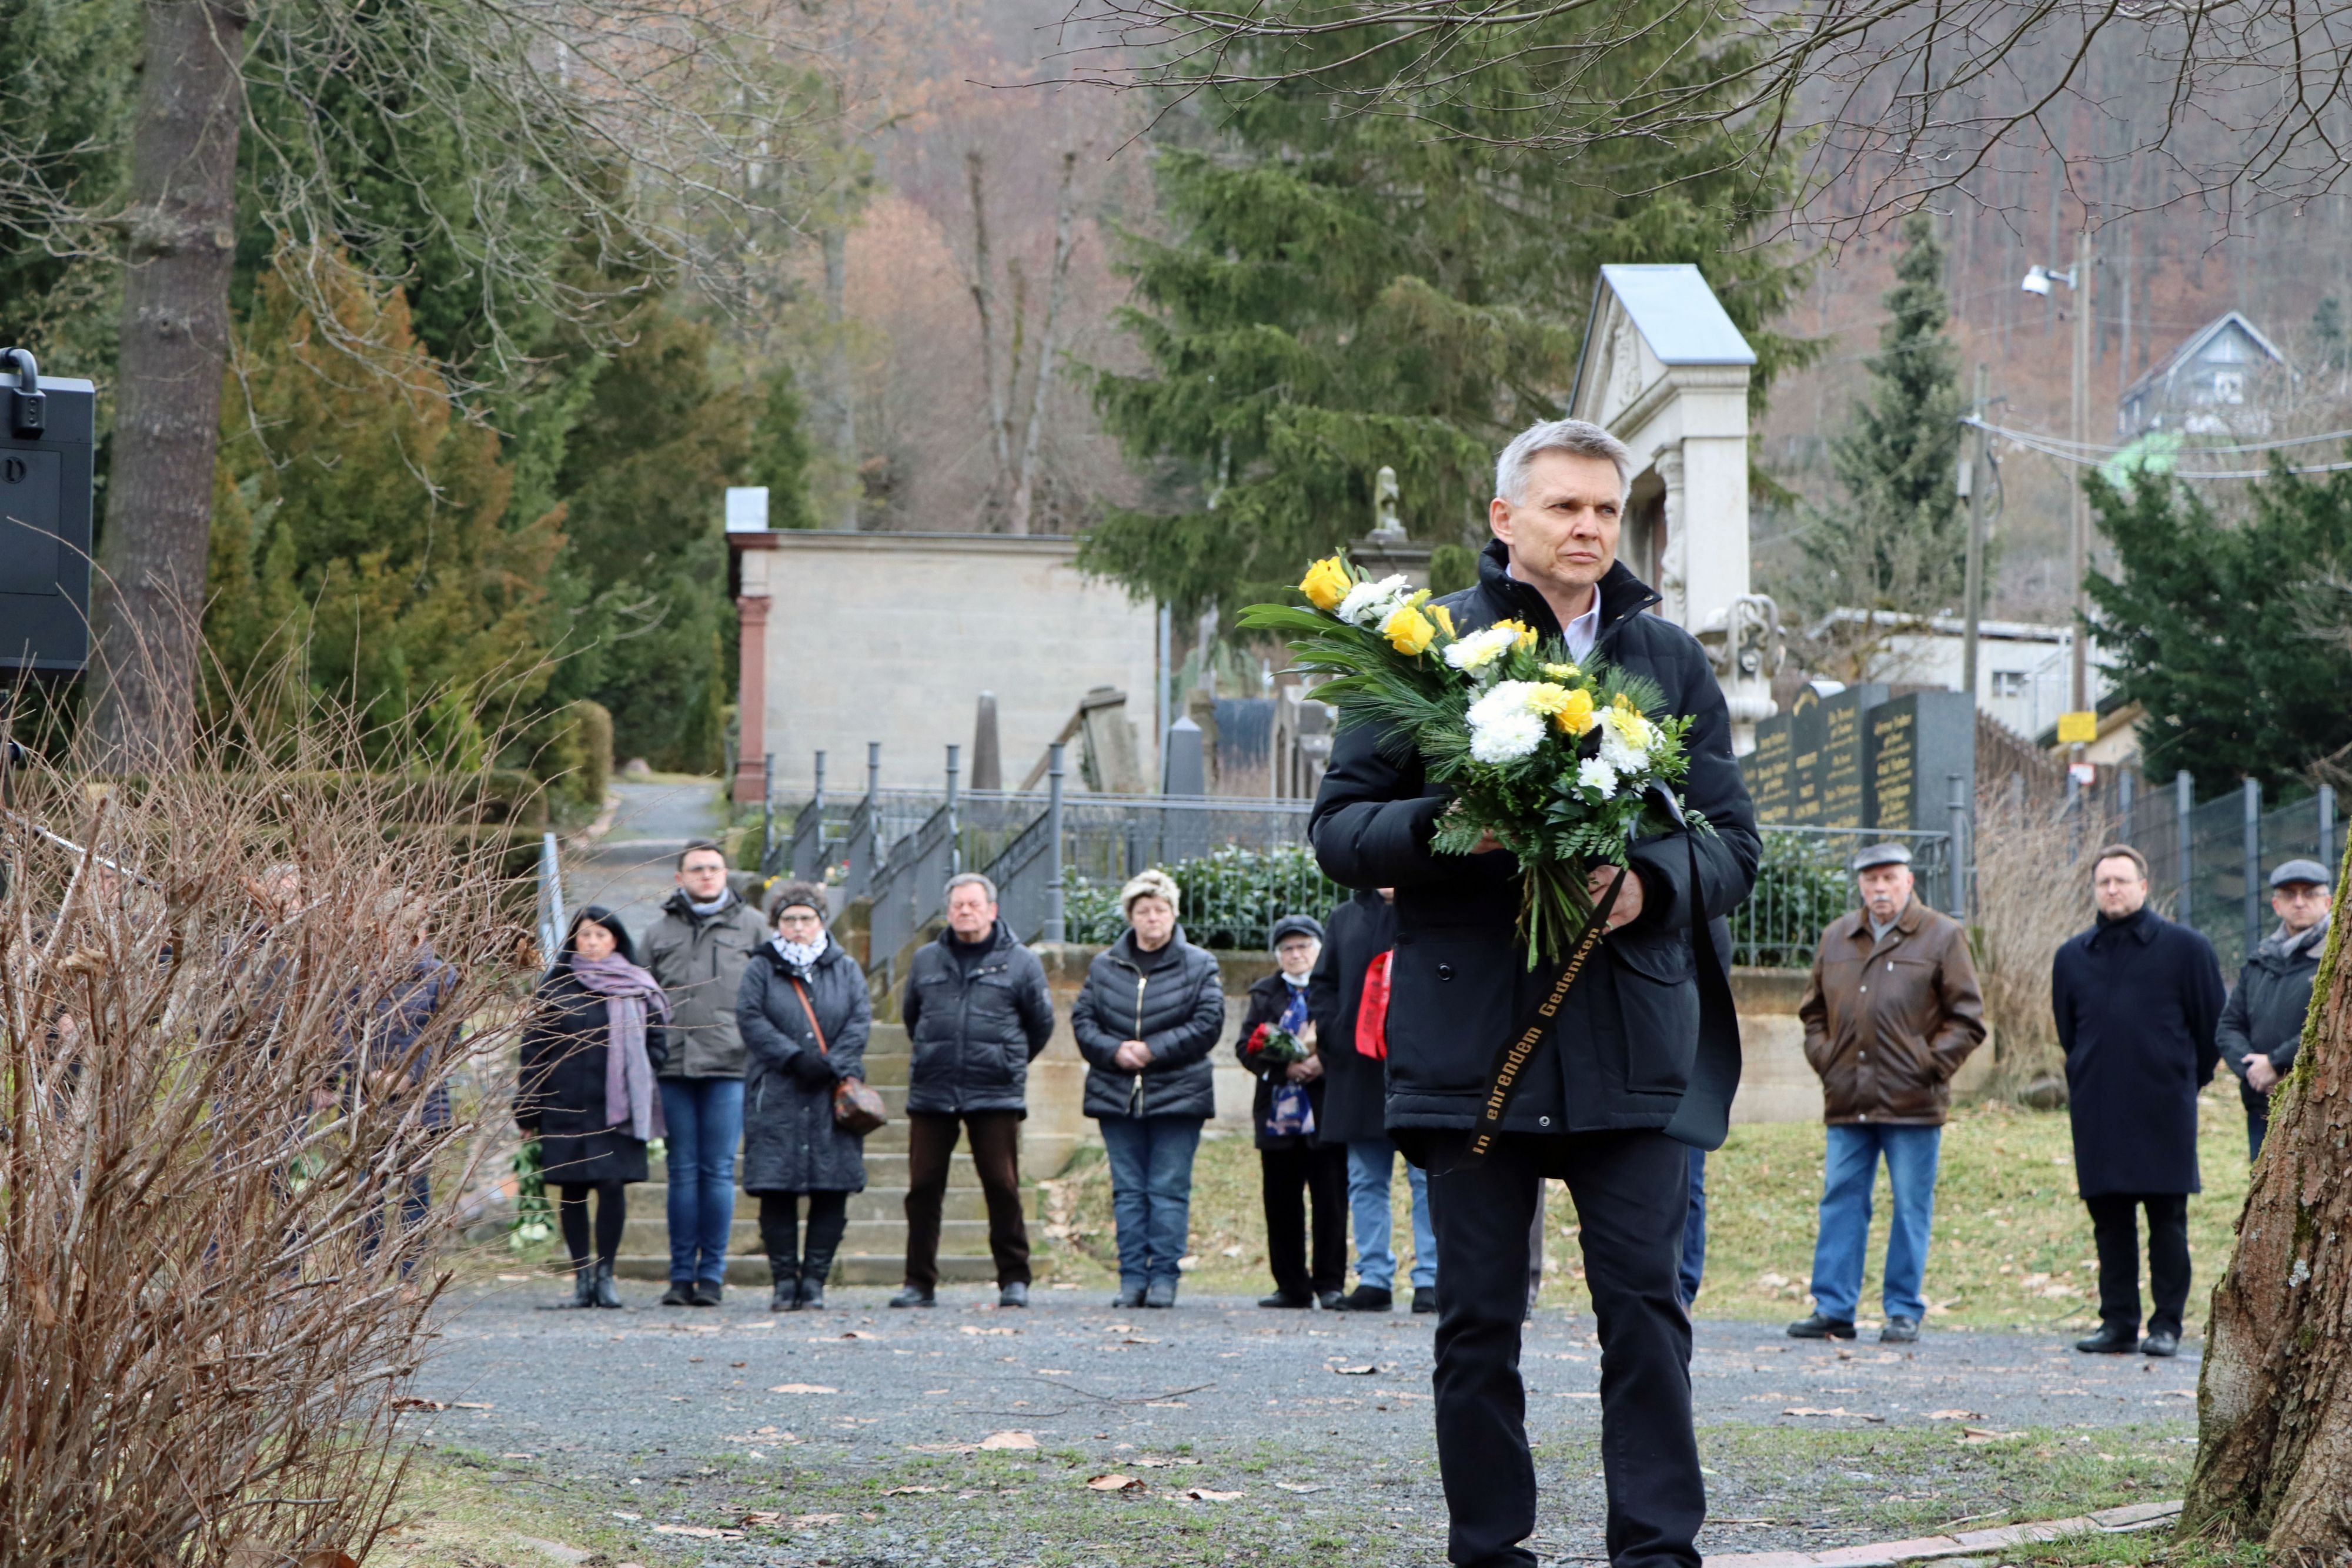 Ein dunkel gekleideter Mann steht mit einem Blumenstrauß auf dem Friedhof. Im Hindergrund stehen weitere Personen.